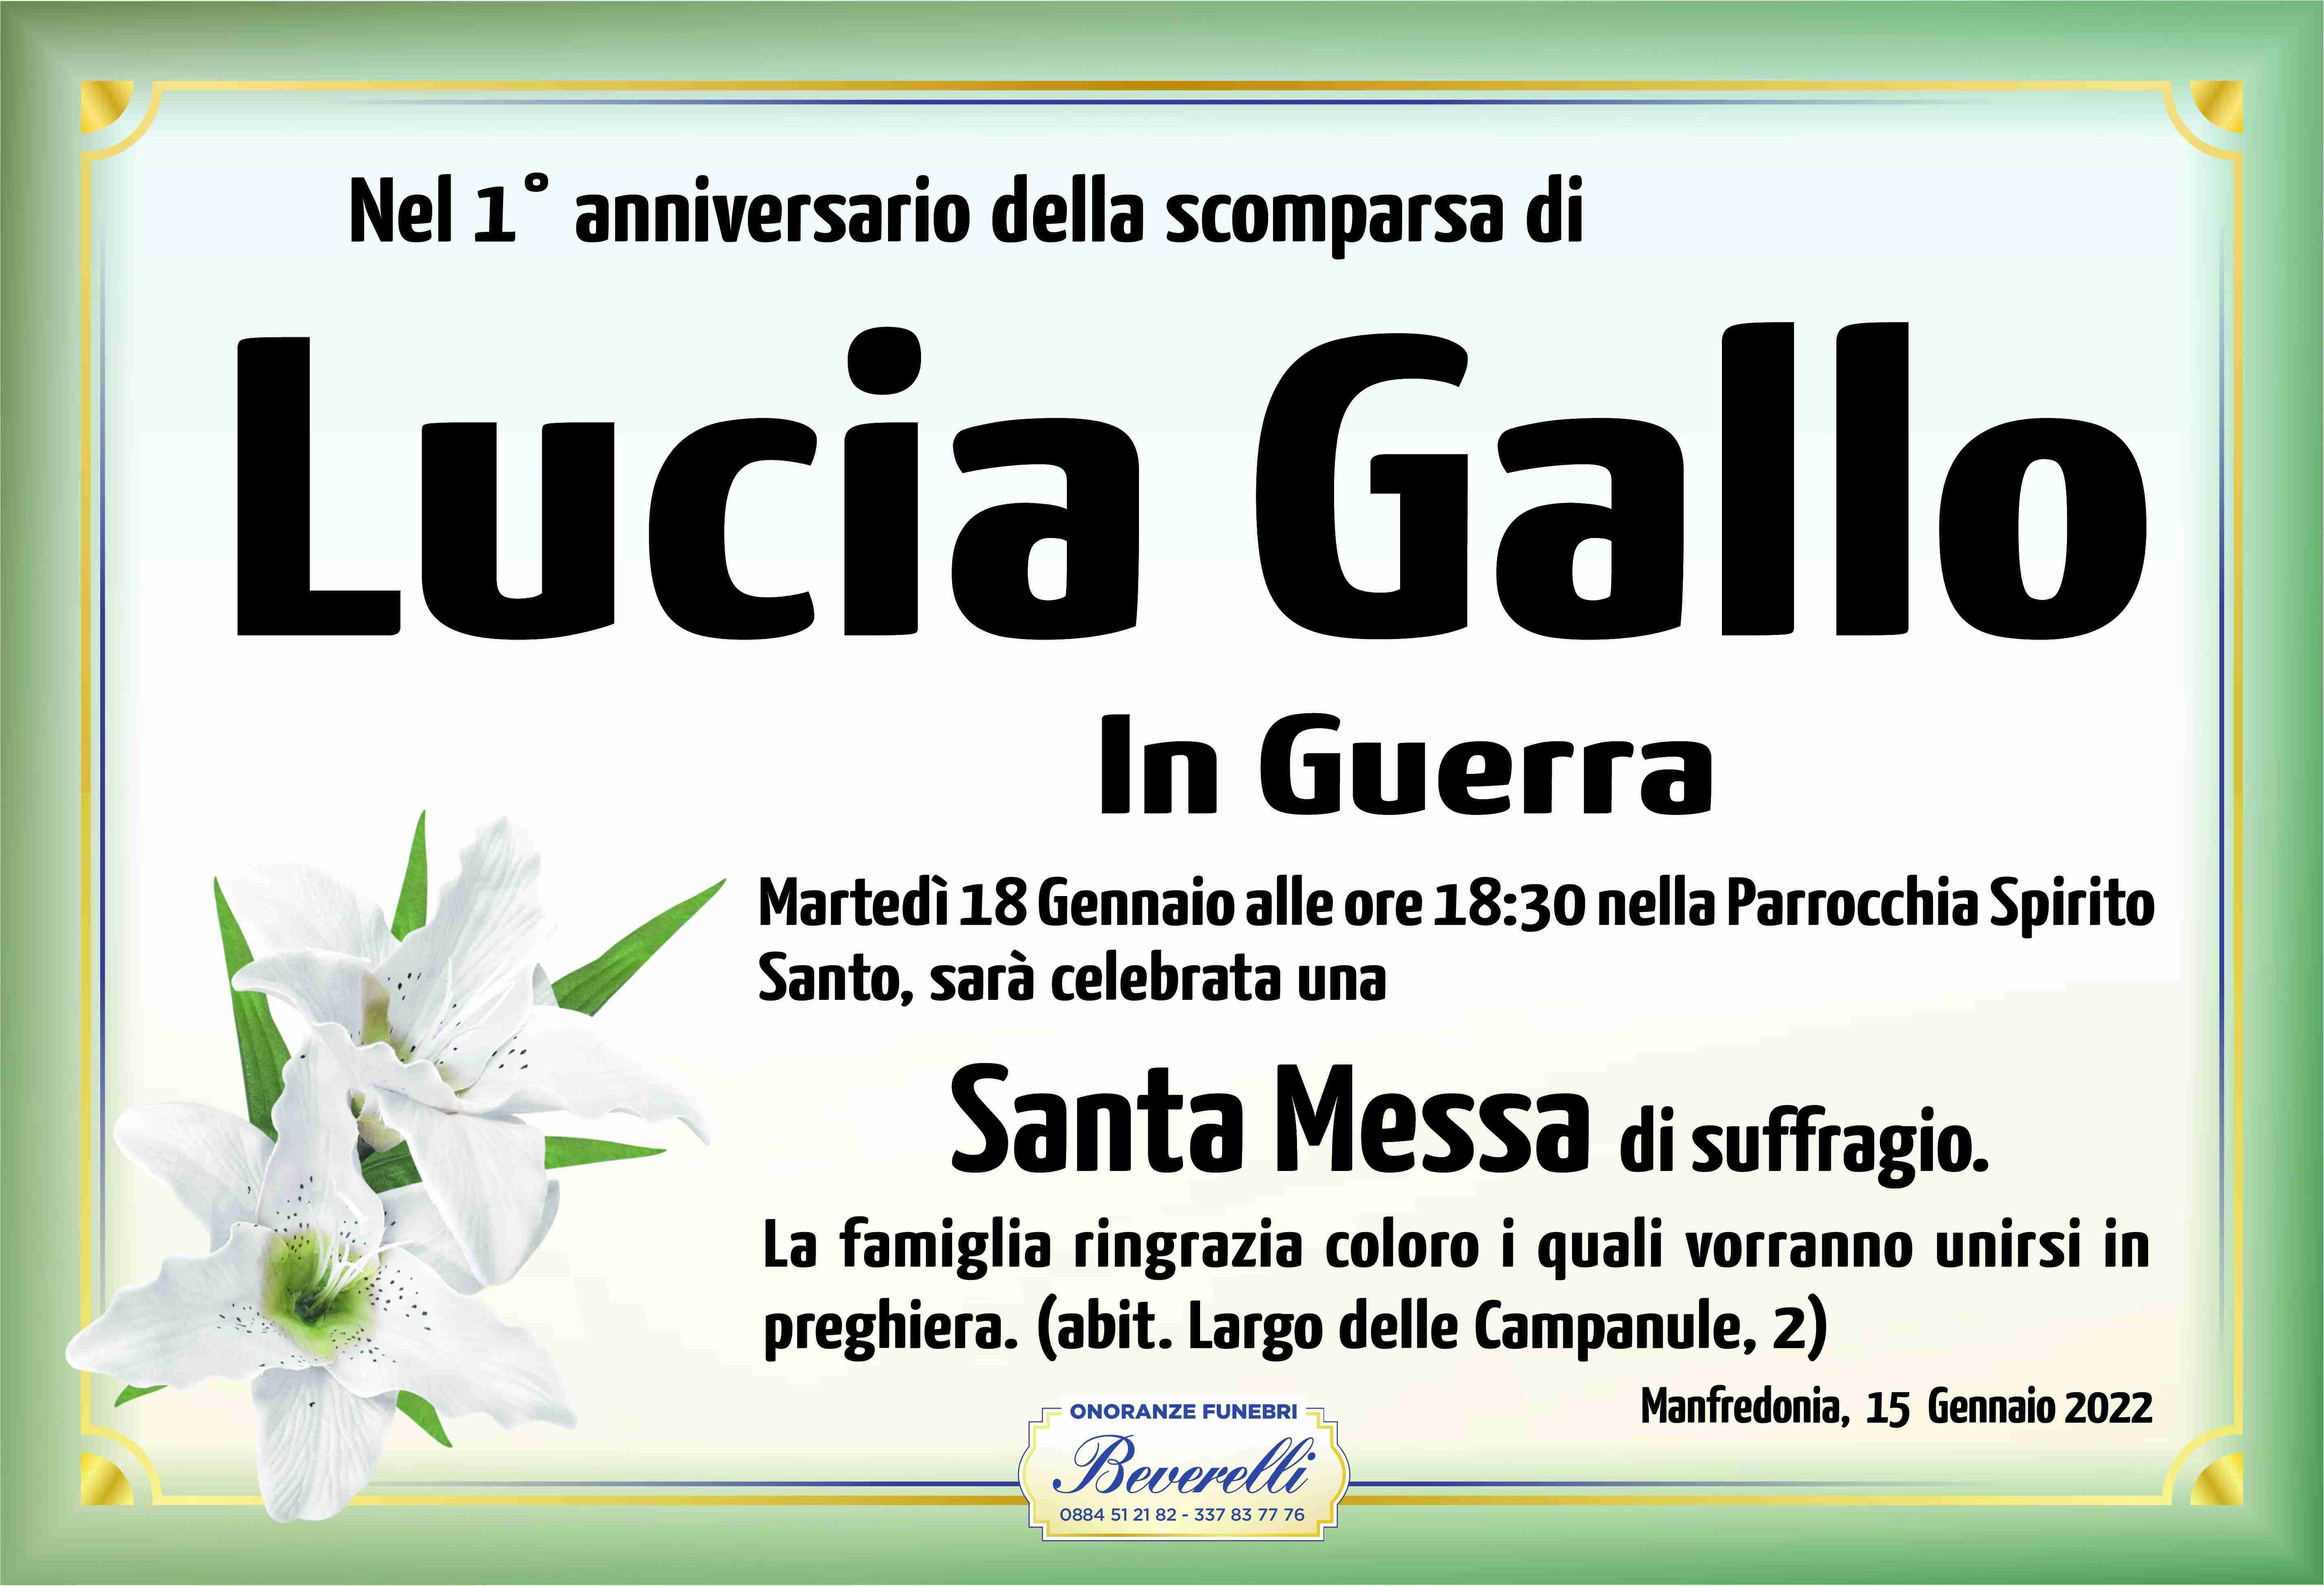 Lucia Gallo